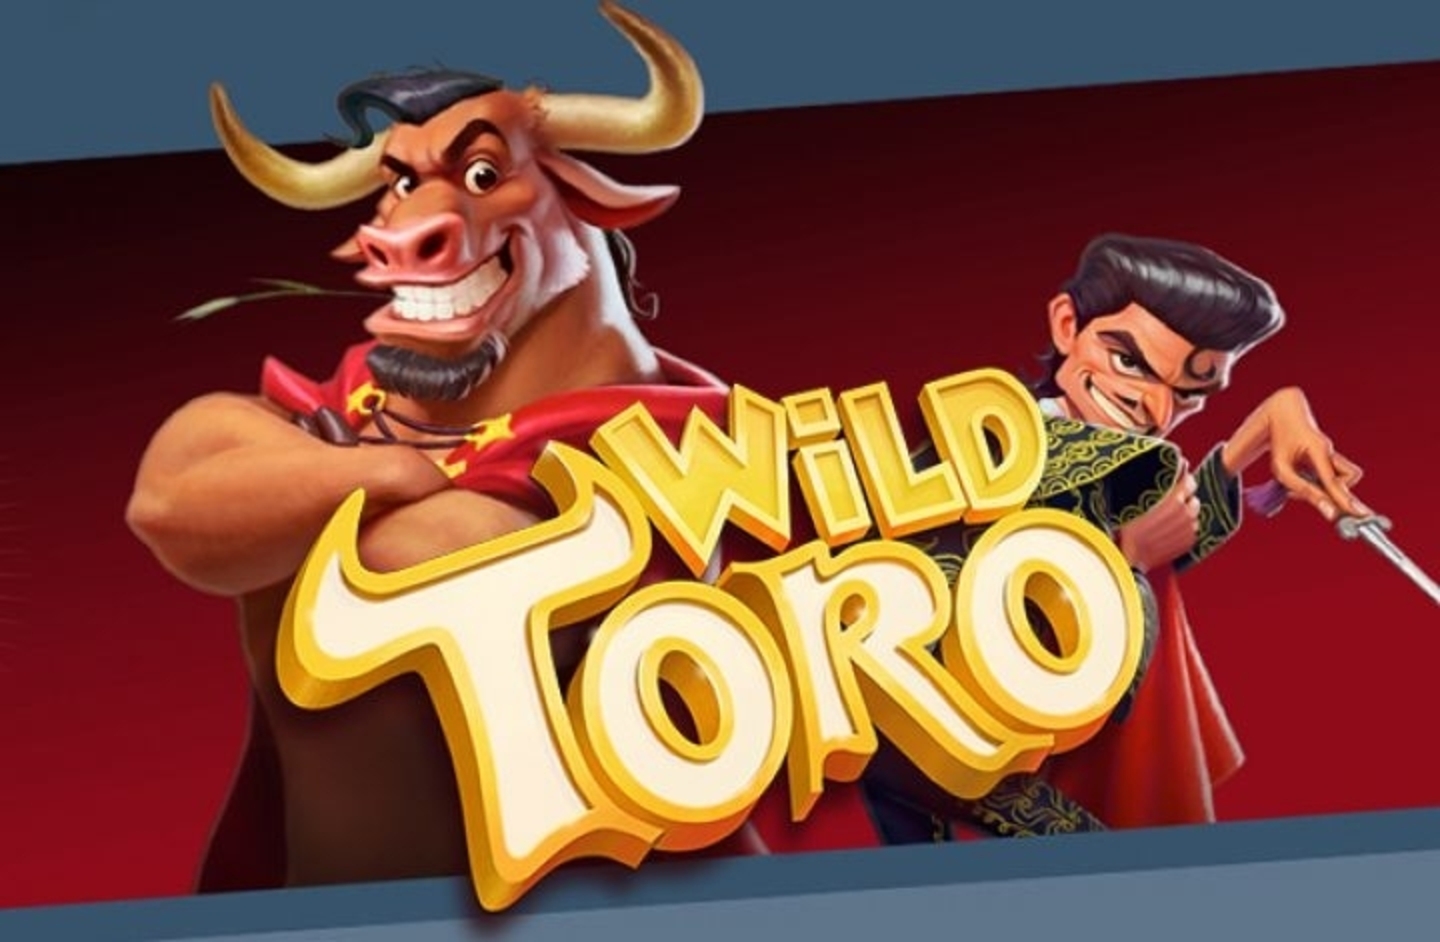 Wild Toro demo